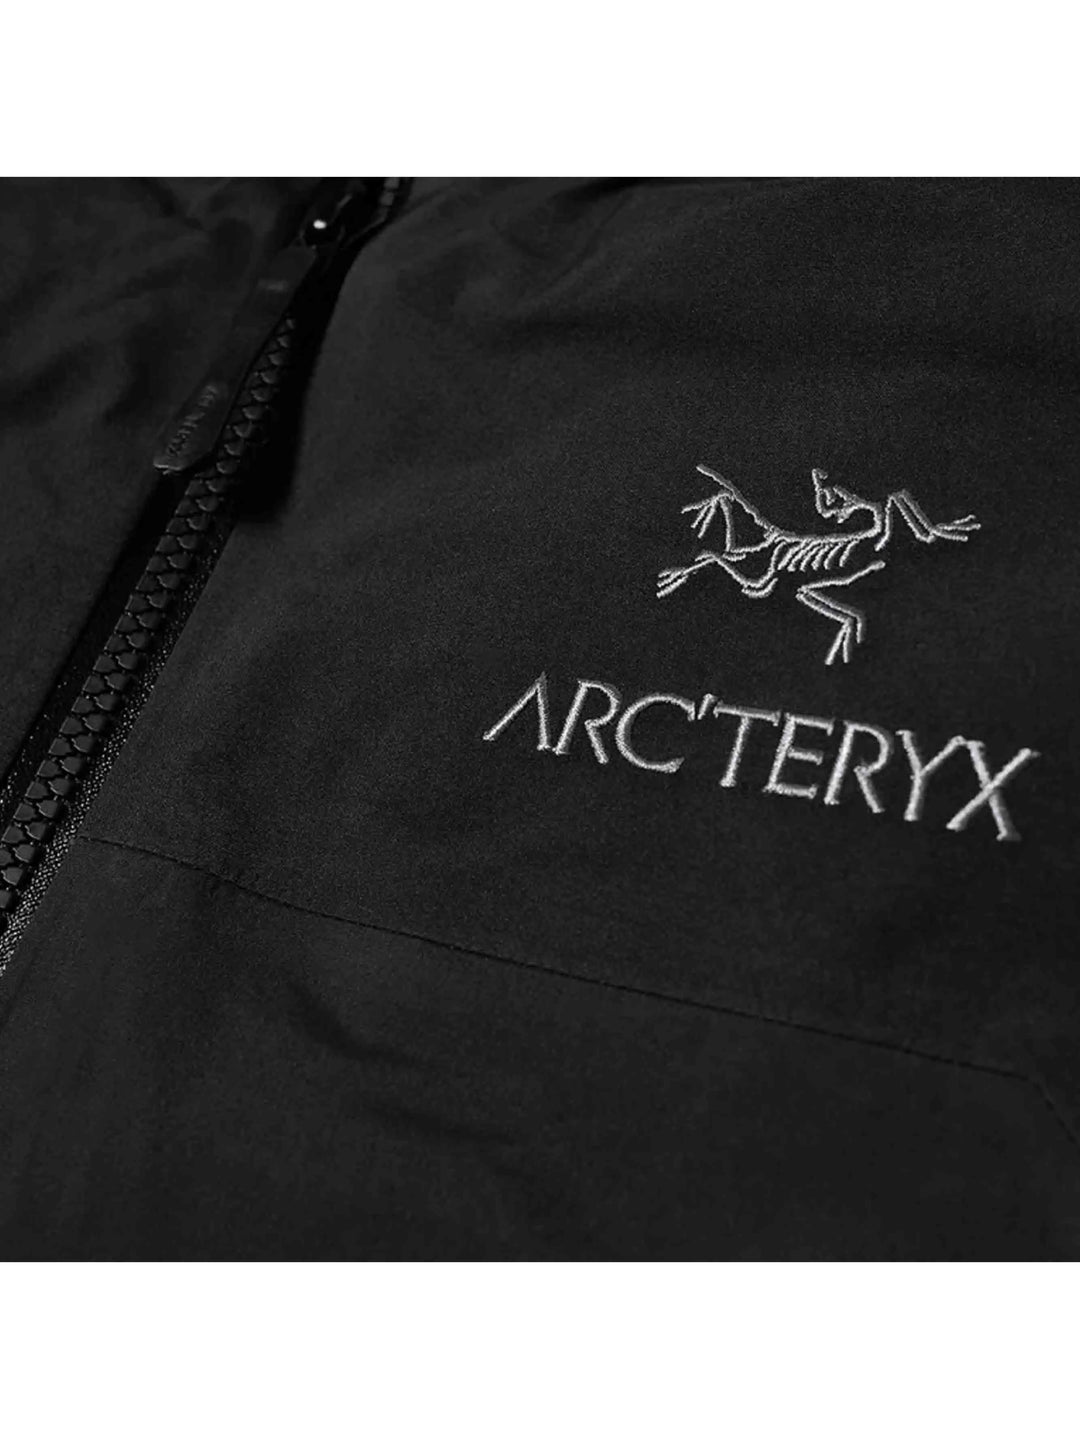 Arc'teryx Beta AR Jacket Men's Jacket Black Prior